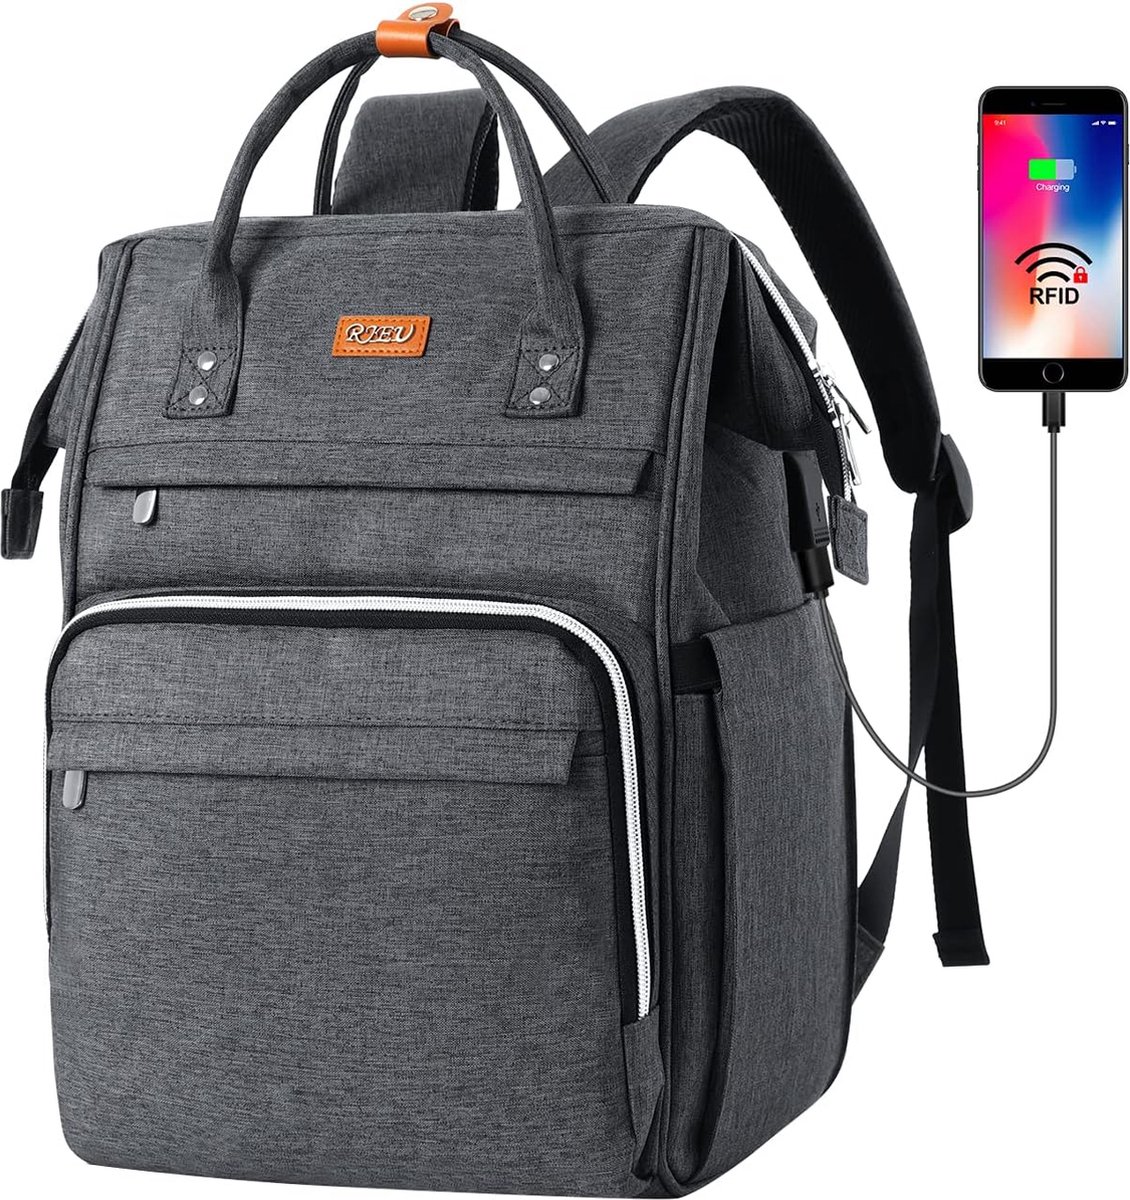 Rugzak met USB-poort - Donkergrijs - 15.6 inch laptoptas - Voor school, werk, reizen - Rugtas met veel opbergruimte